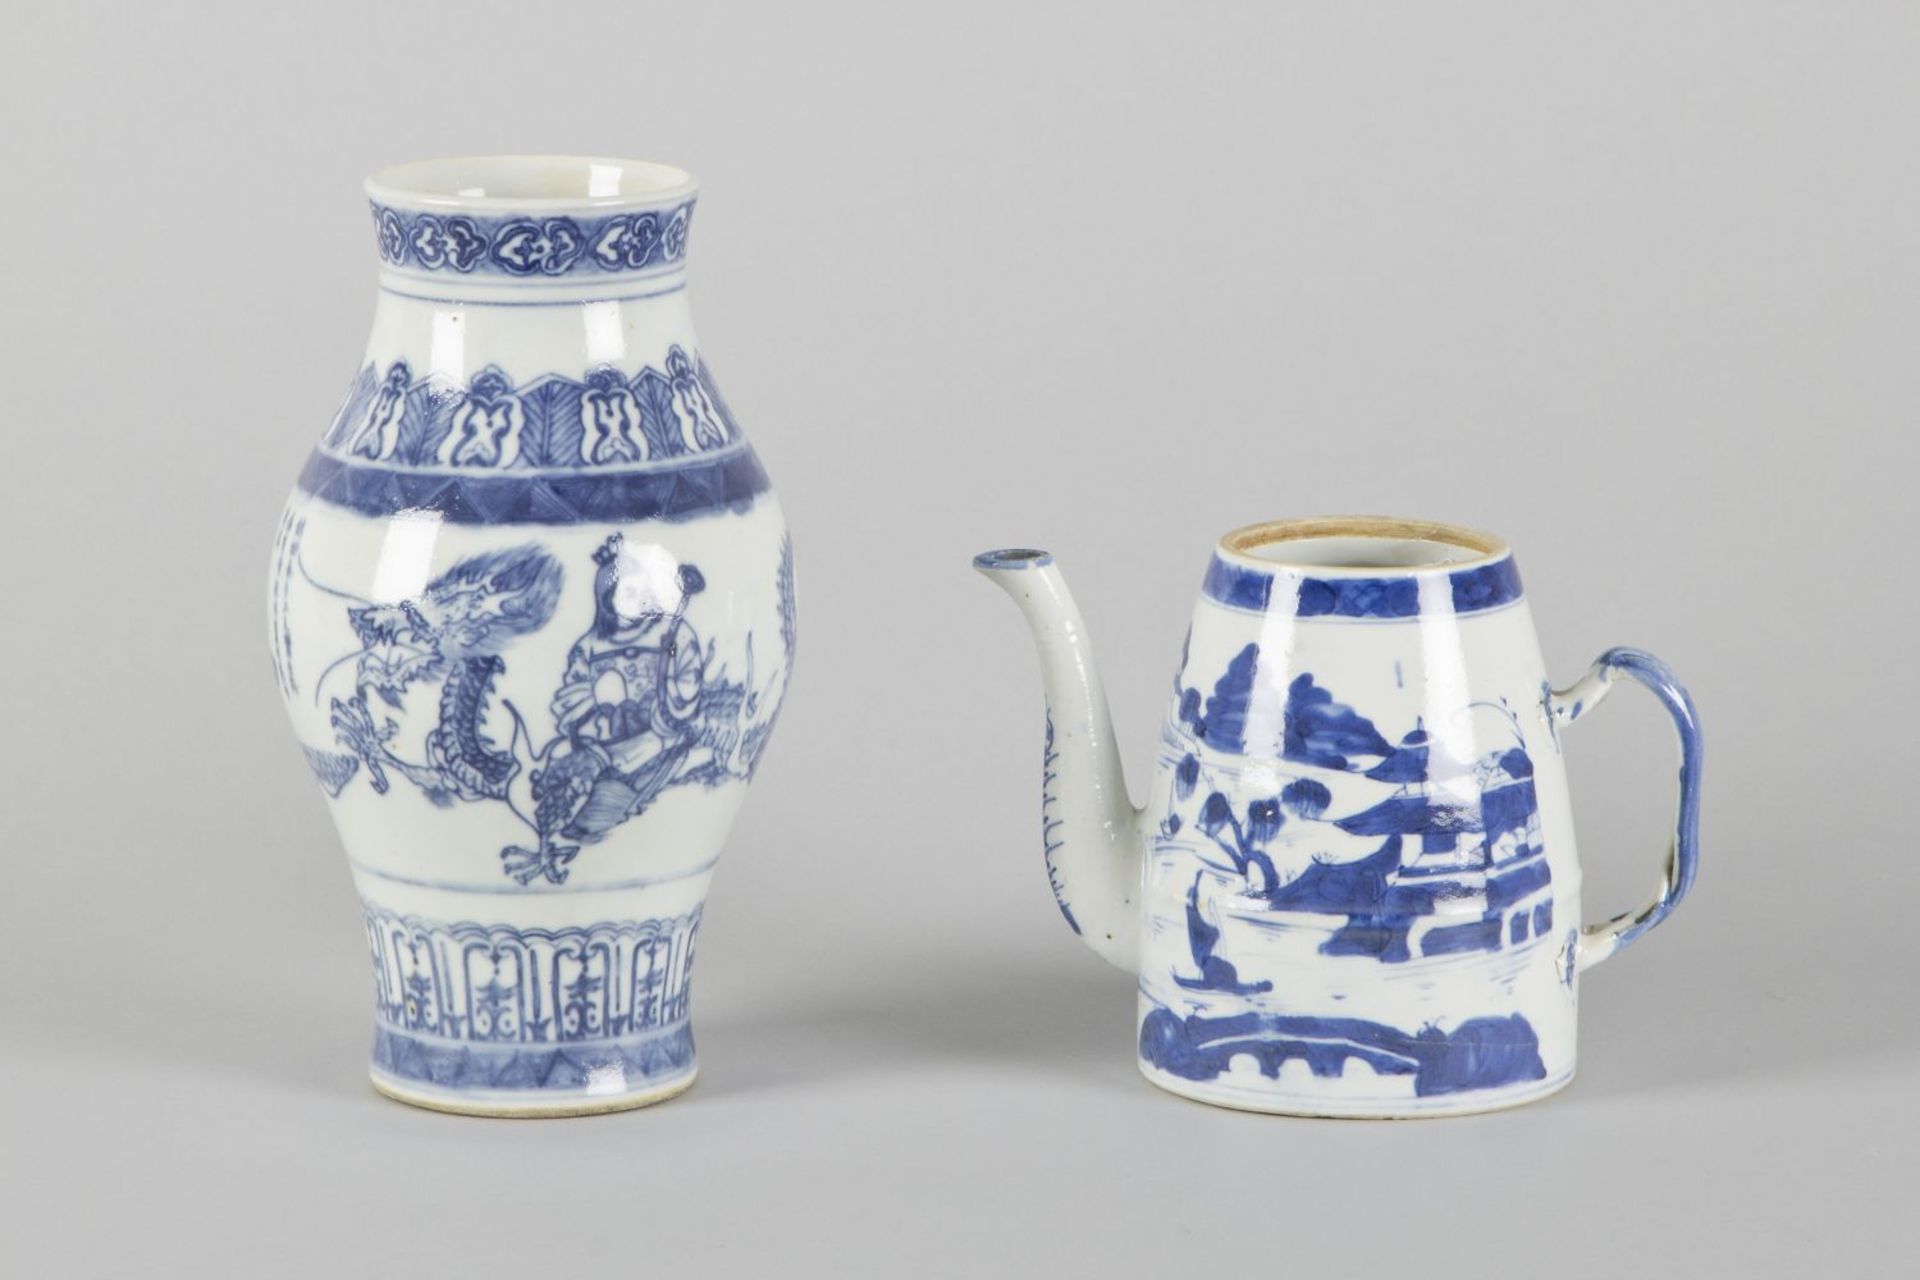 Vase und TeekannePorzellan. Versch. blaue Dekore u.a. auf Drachen bzw. Phönix reitende Personen.